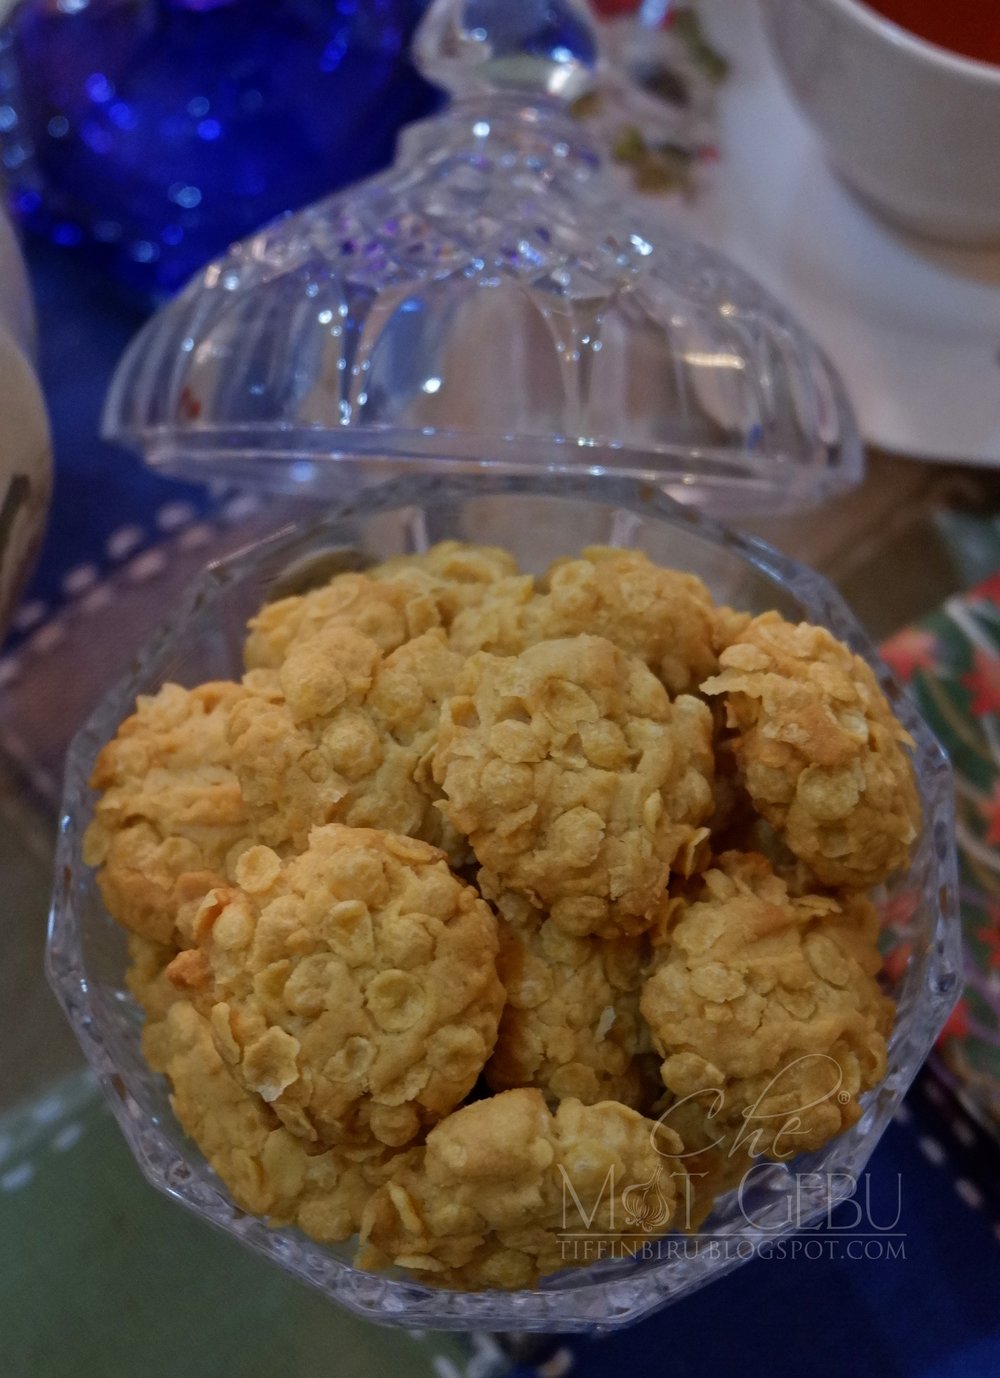 Resepi biskut cornflakes crunchy sukatan cawan